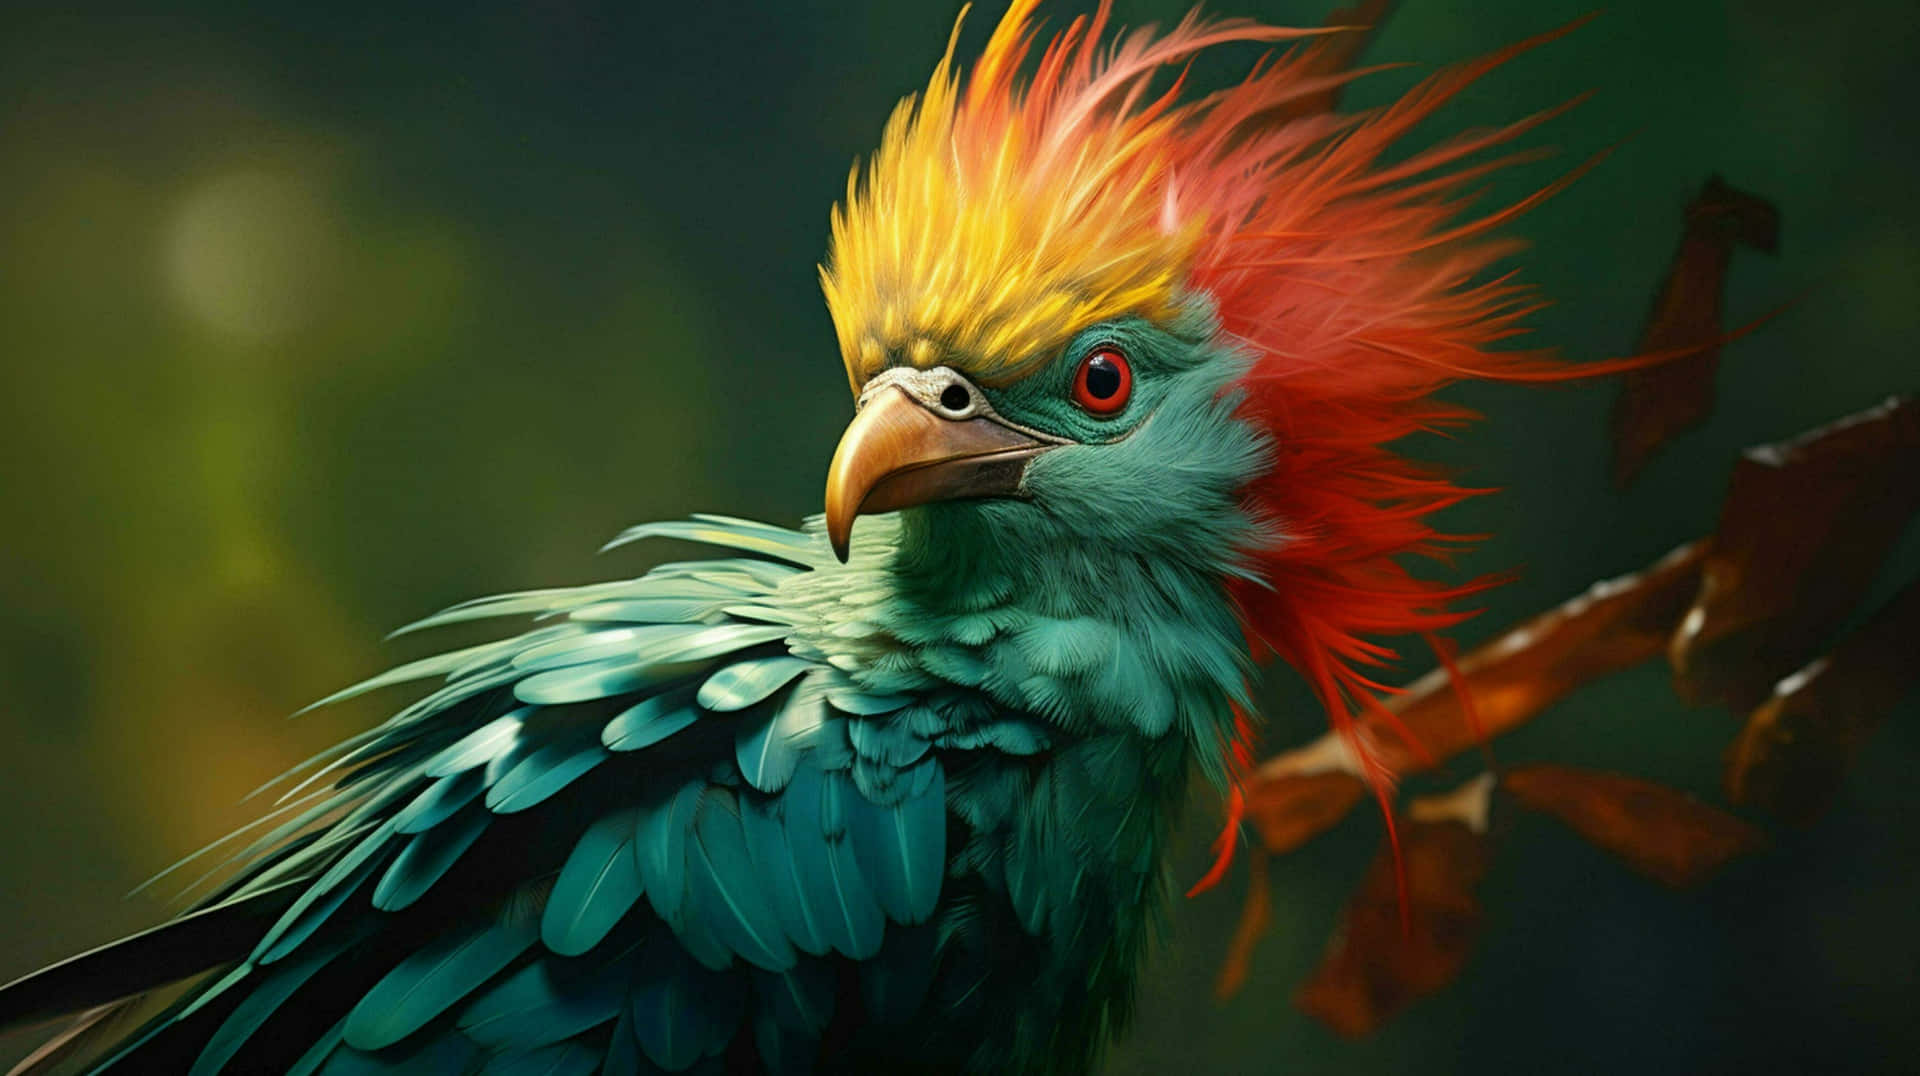 Vibrant Quetzal Portrait Wallpaper